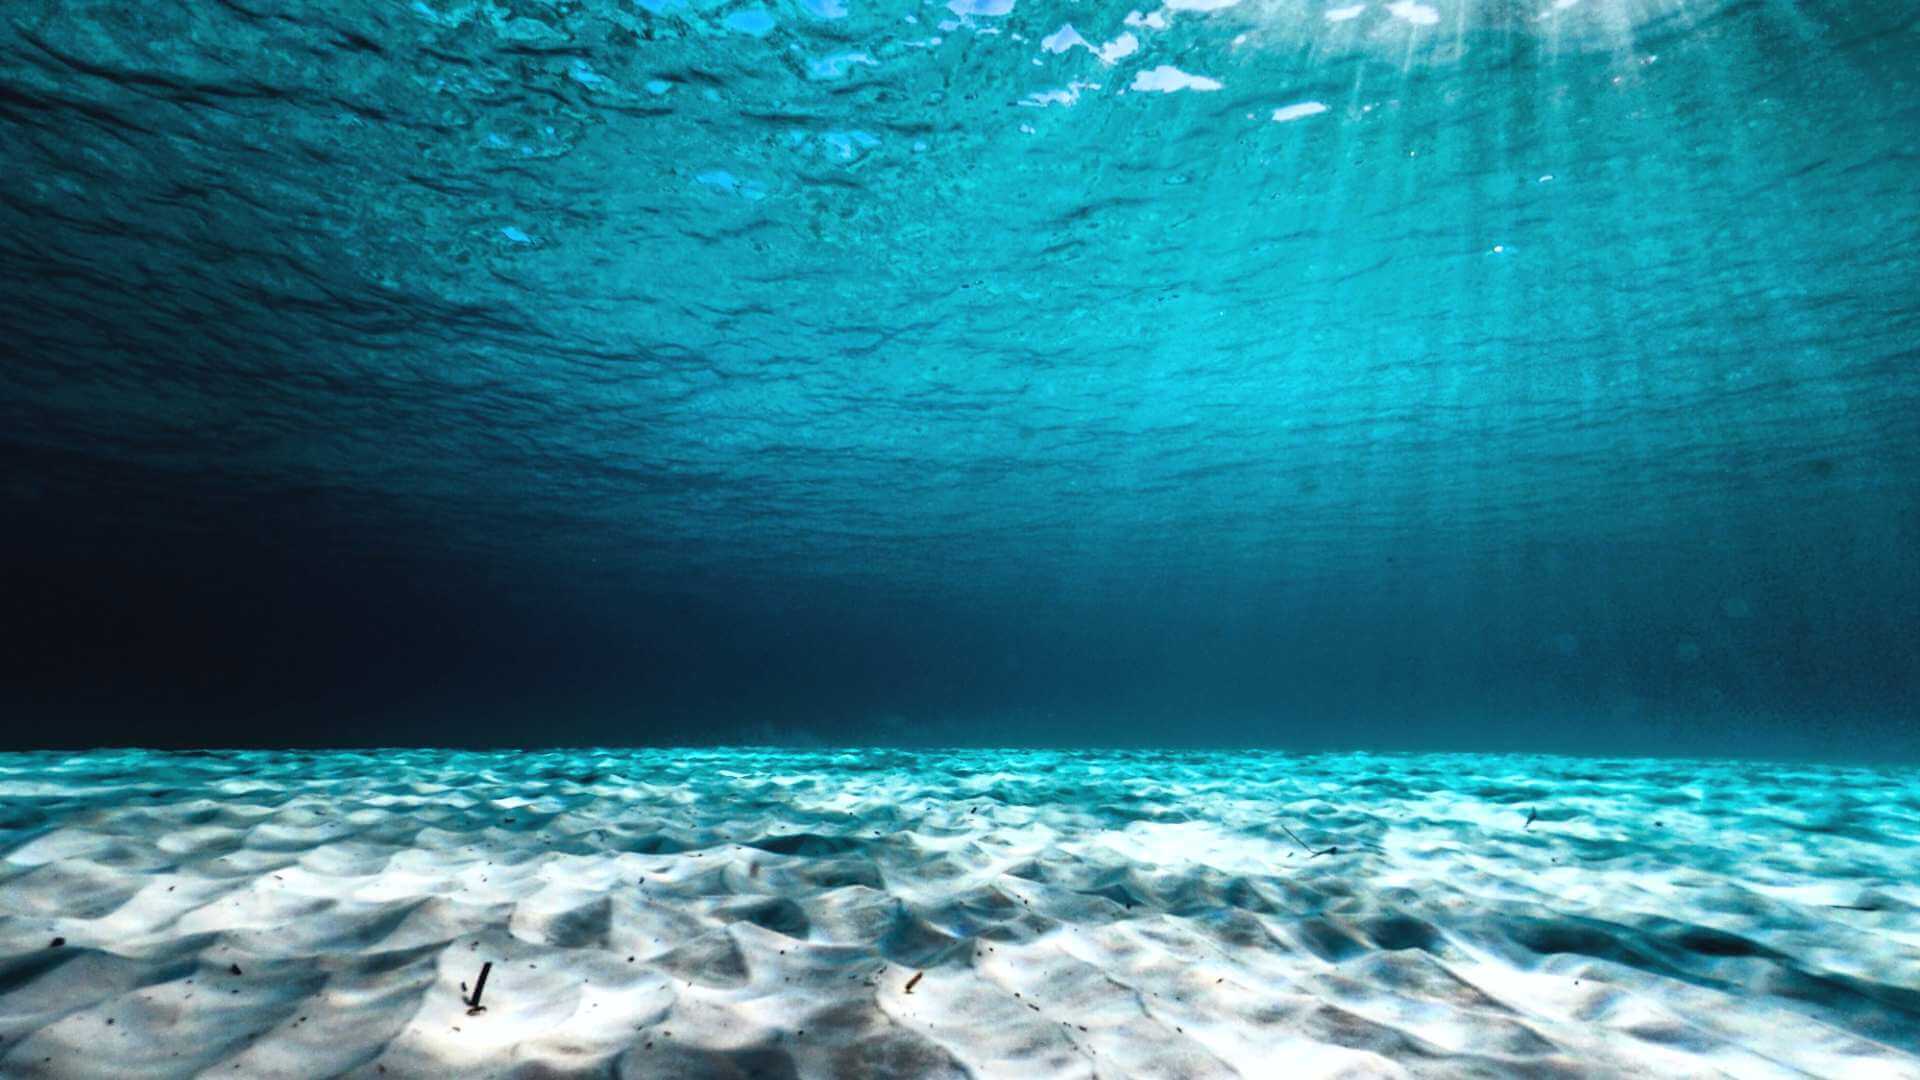 clear-concept-underwater-ocean-floor-perspectives-shutterstock-1422884786.